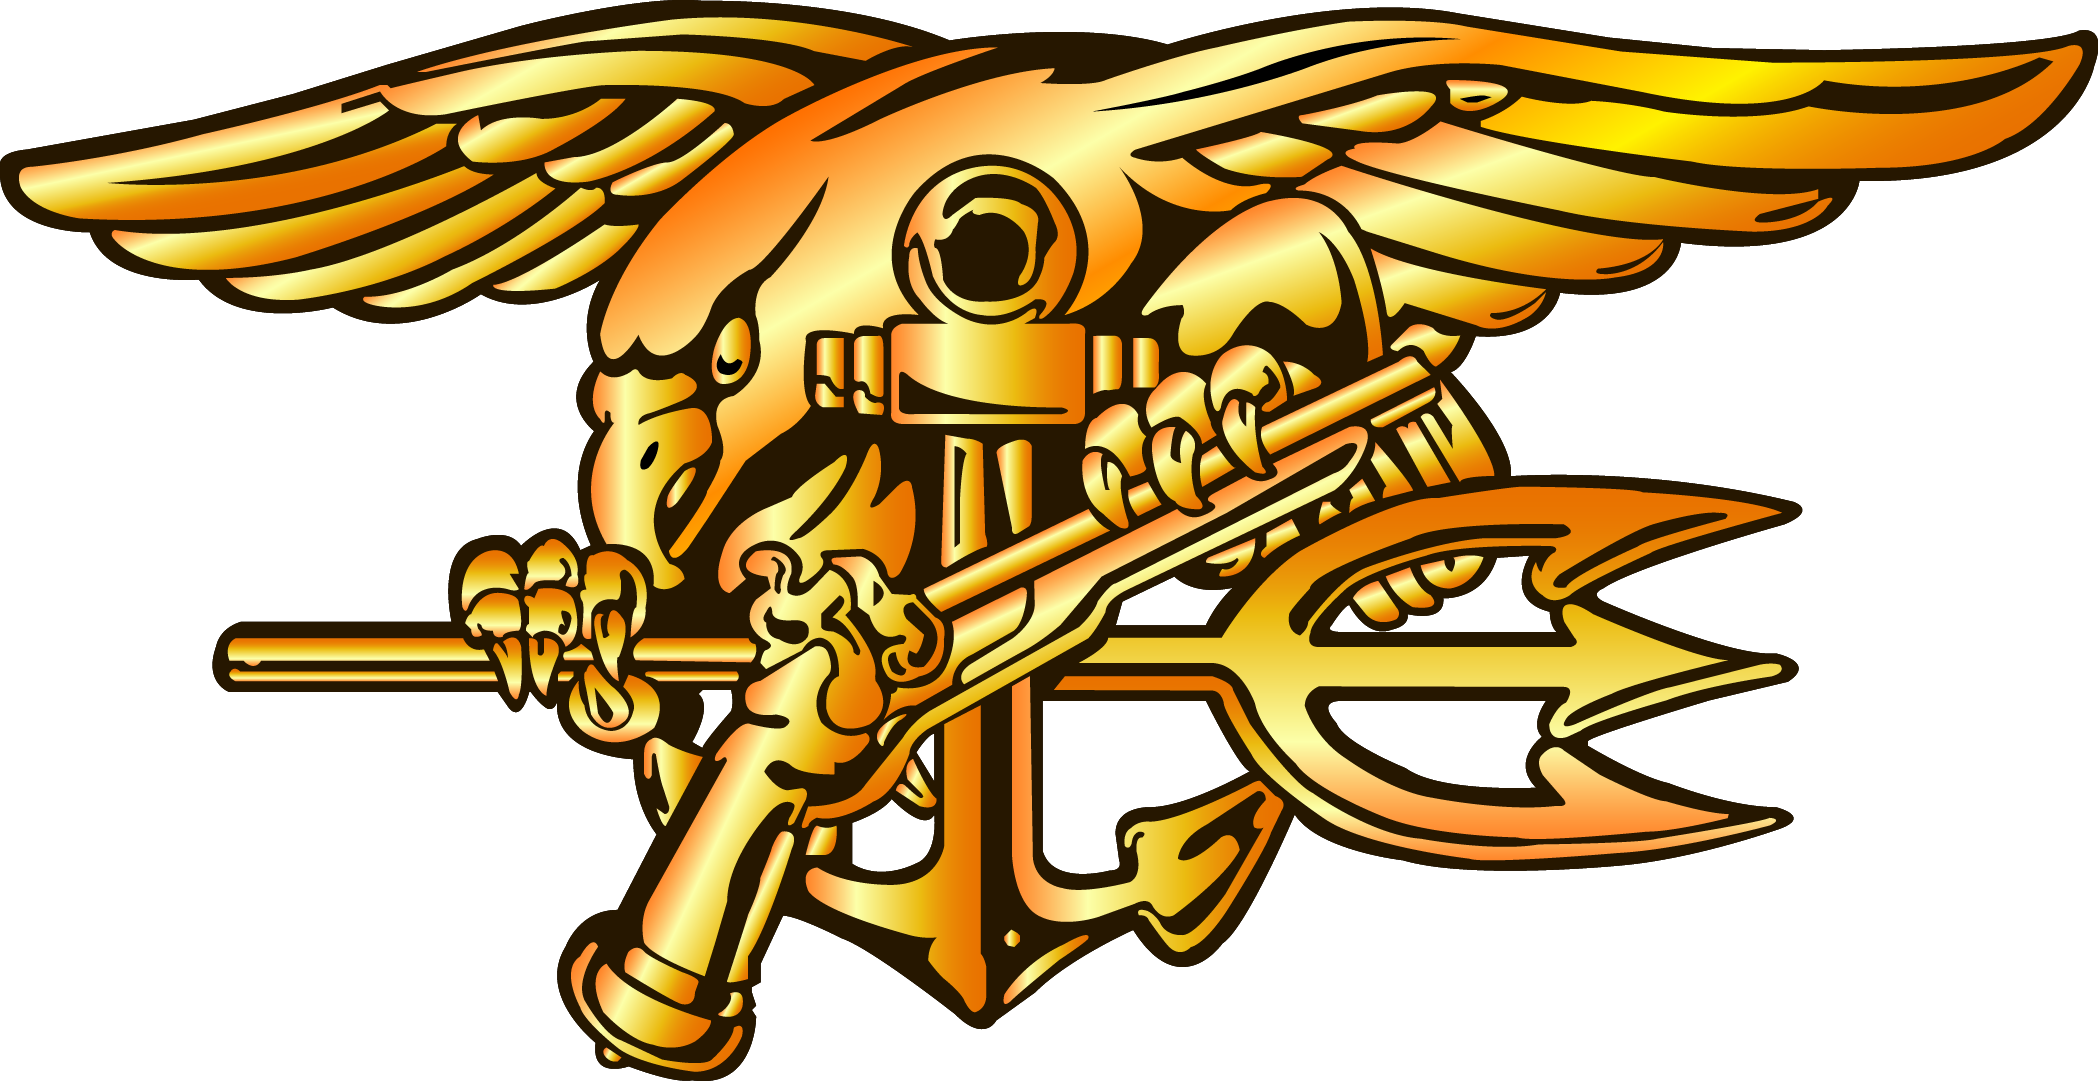 Us Navy Seal Emblem 2098x1081